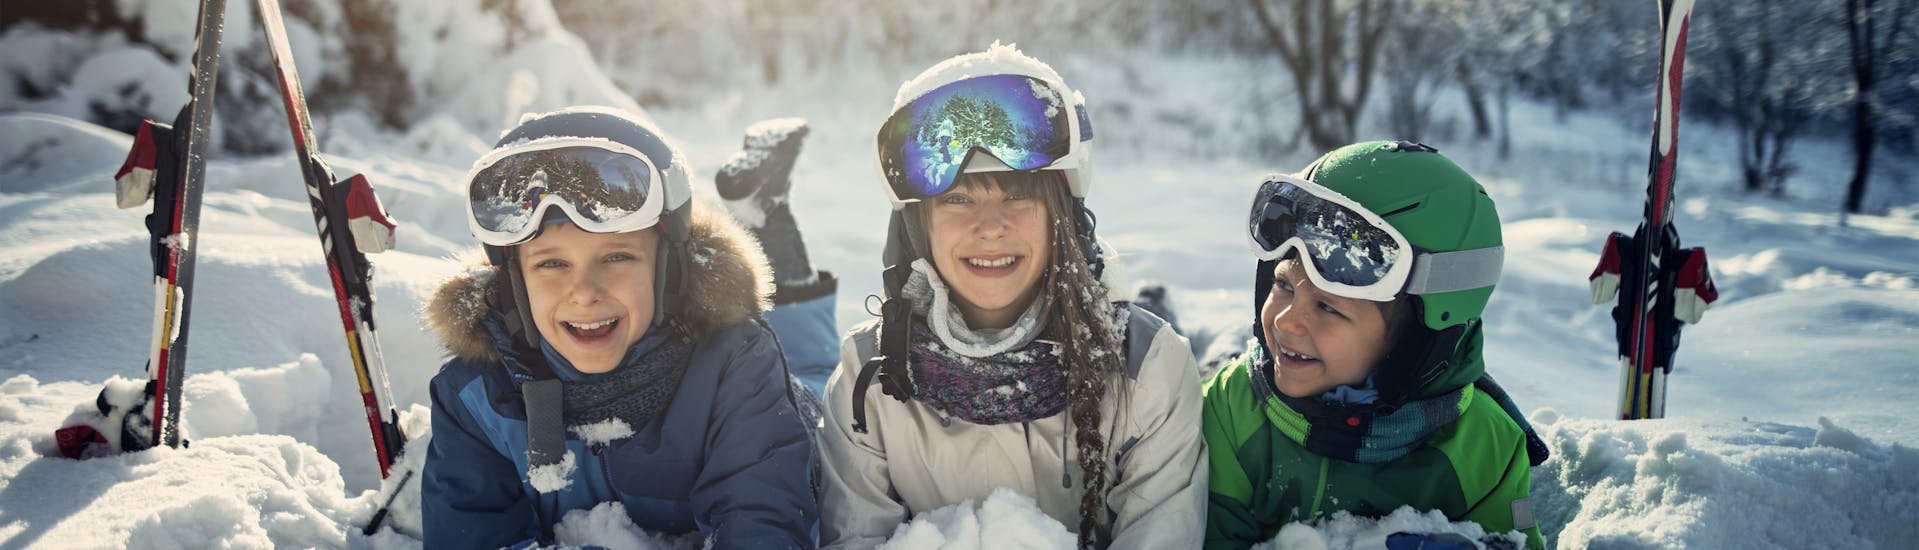 Drie kinderen hebben plezier in de sneeuw tijdens hun skilessen voor kinderen bij skischool Jennerkids TreffAktiv.